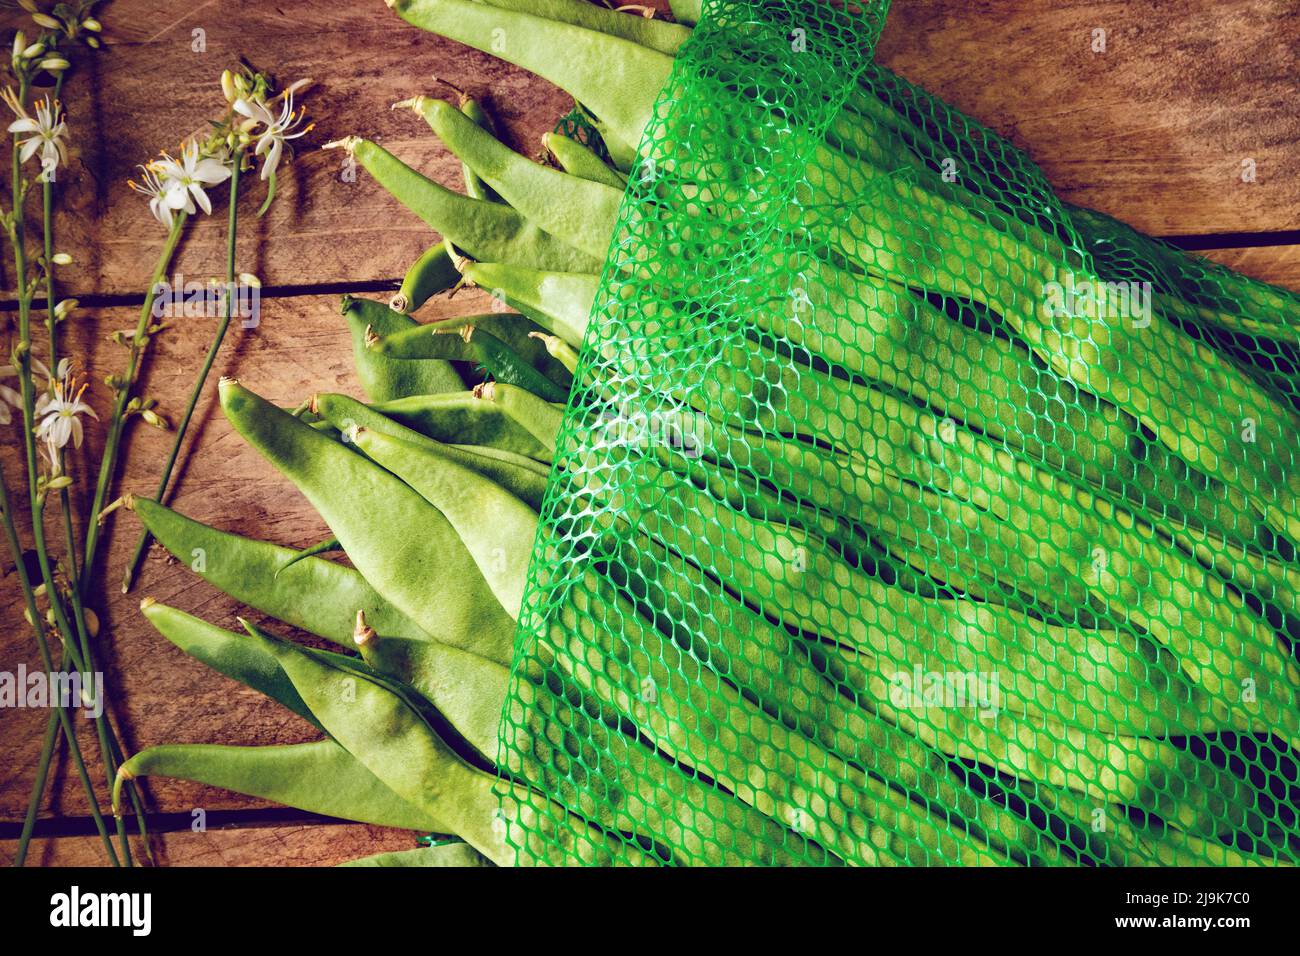 Imagen rústica y natural de frijoles verdes frescos recién cosechados. Alimentos saludables y recetas de cocina Foto de stock